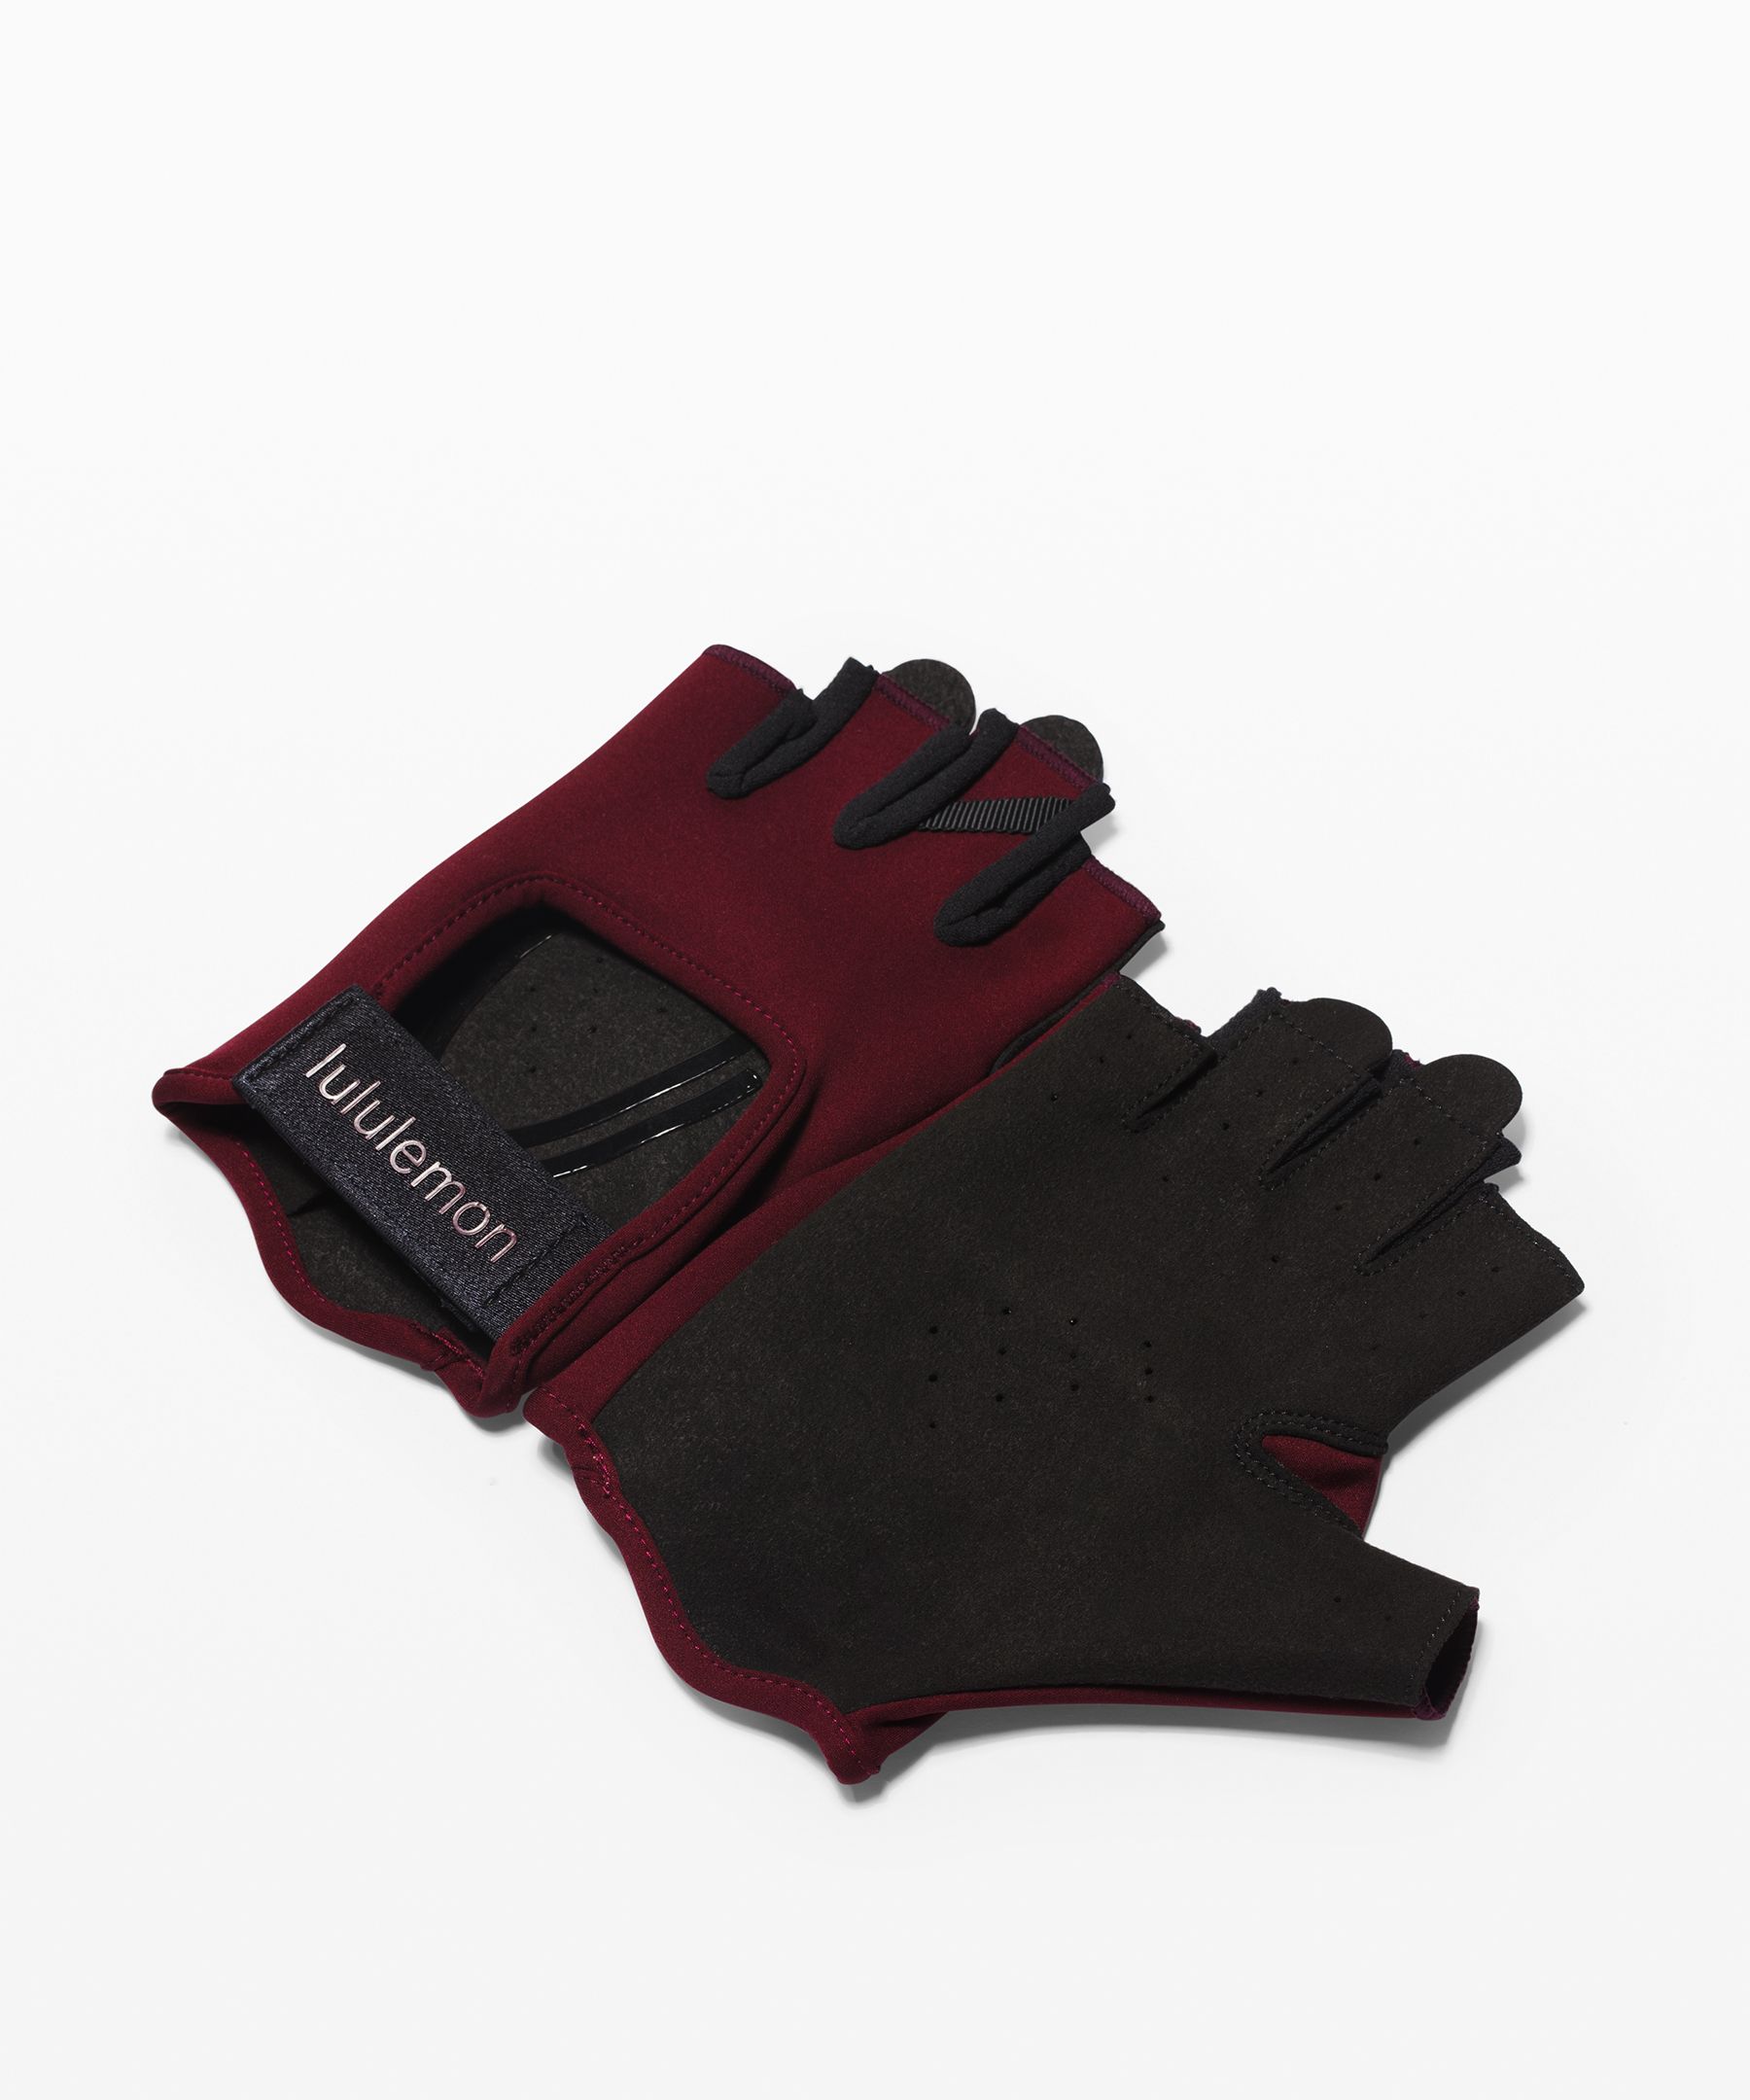 Lululemon Uplift Training Gloves In Garnet/black